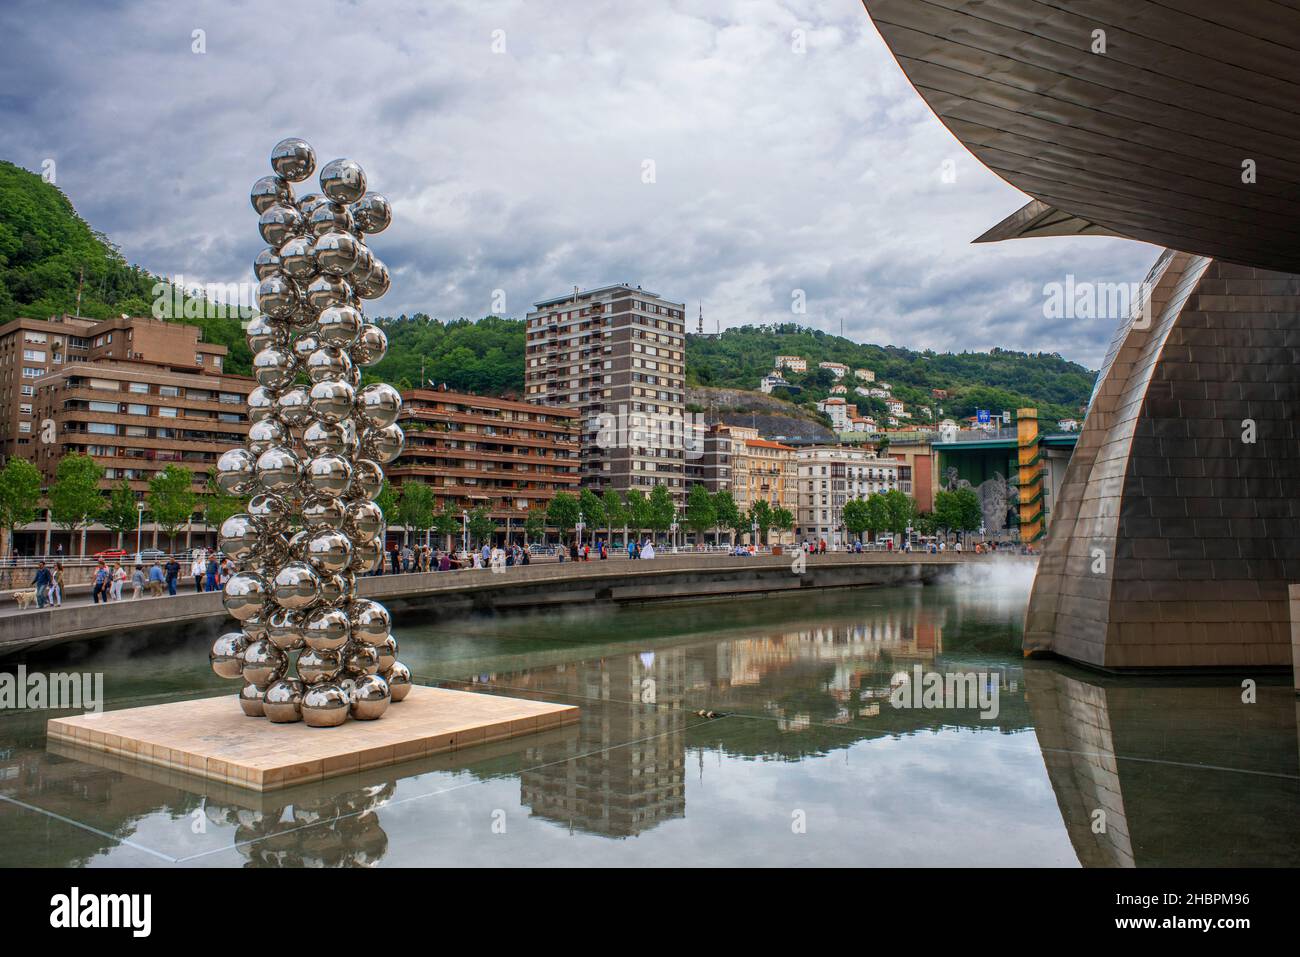 Museo Guggenheim e mostra d'arte Silver Balls, attrazioni famose nella parte della Città Nuova di Bilbao, Paesi Baschi, Spagna Foto Stock